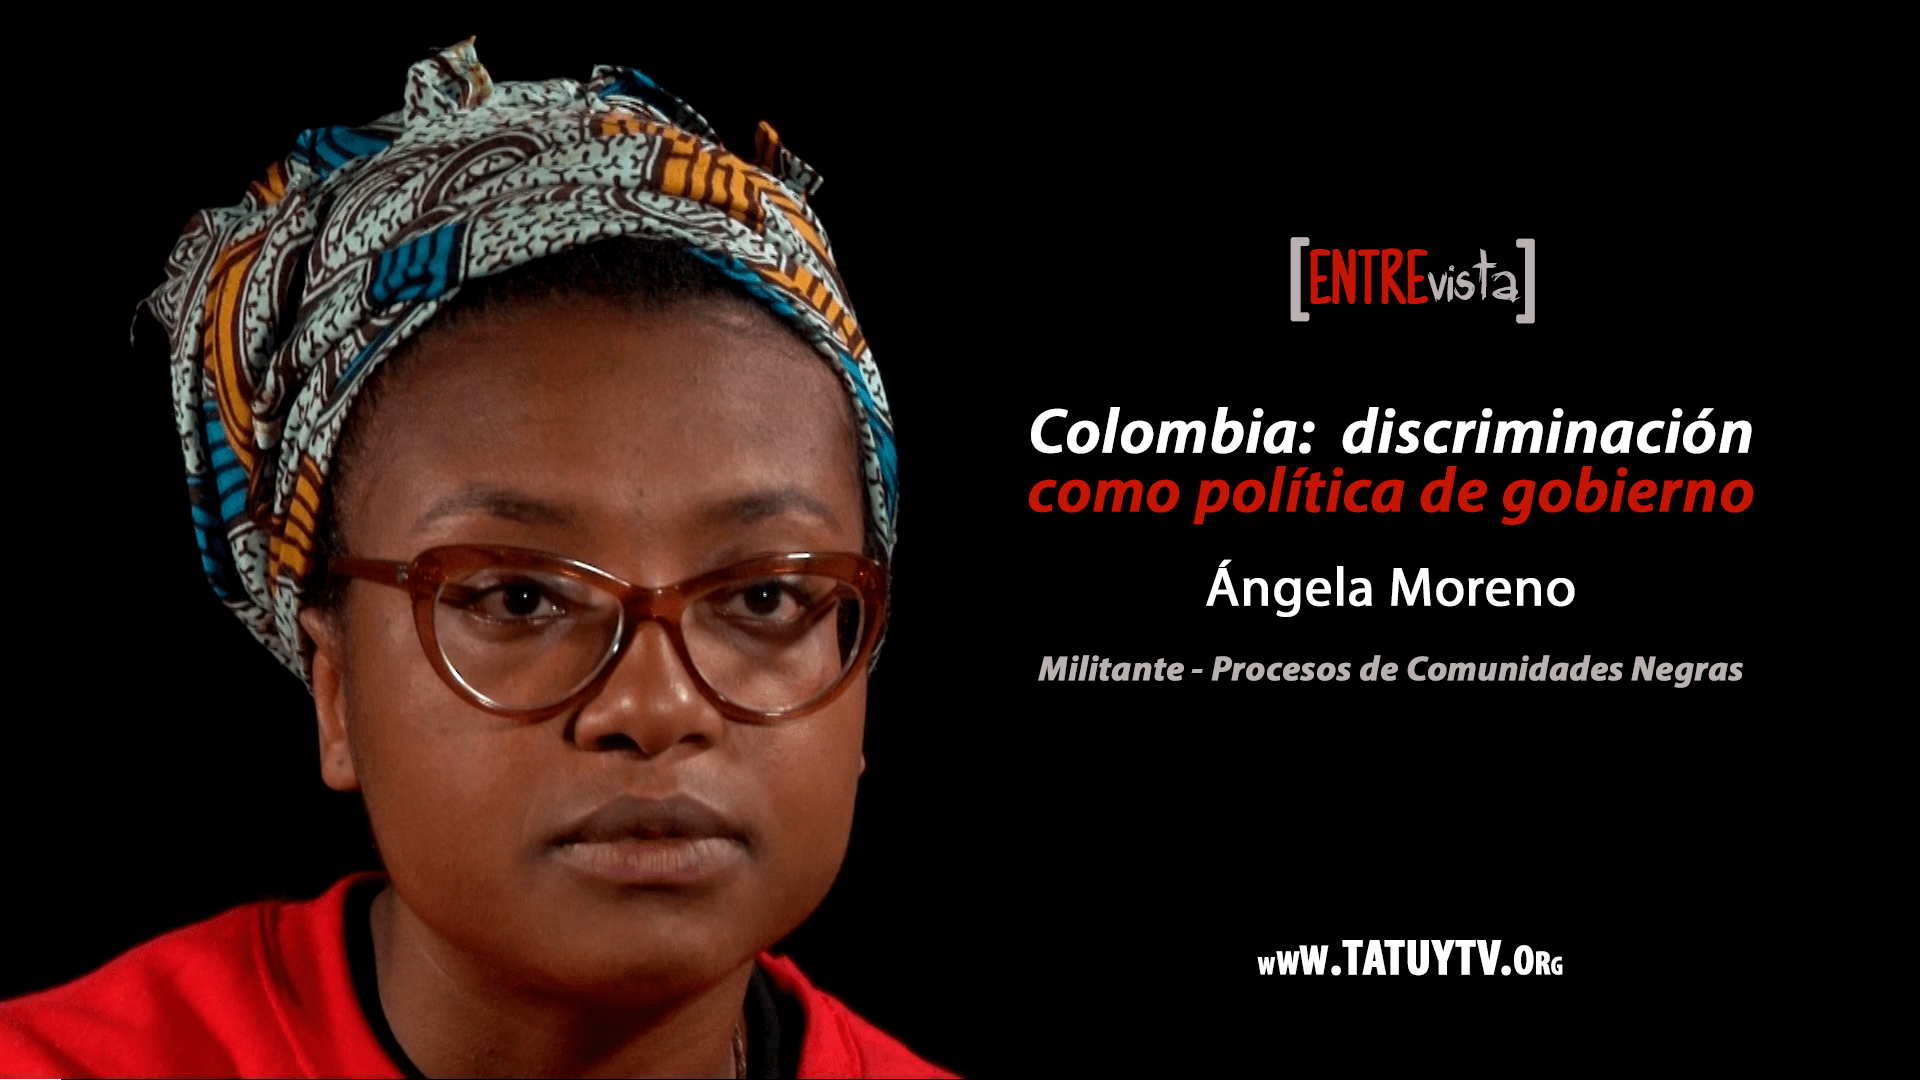 [ENTREVISTA] Colombia: discriminación como política de gobierno - Angela Moreno